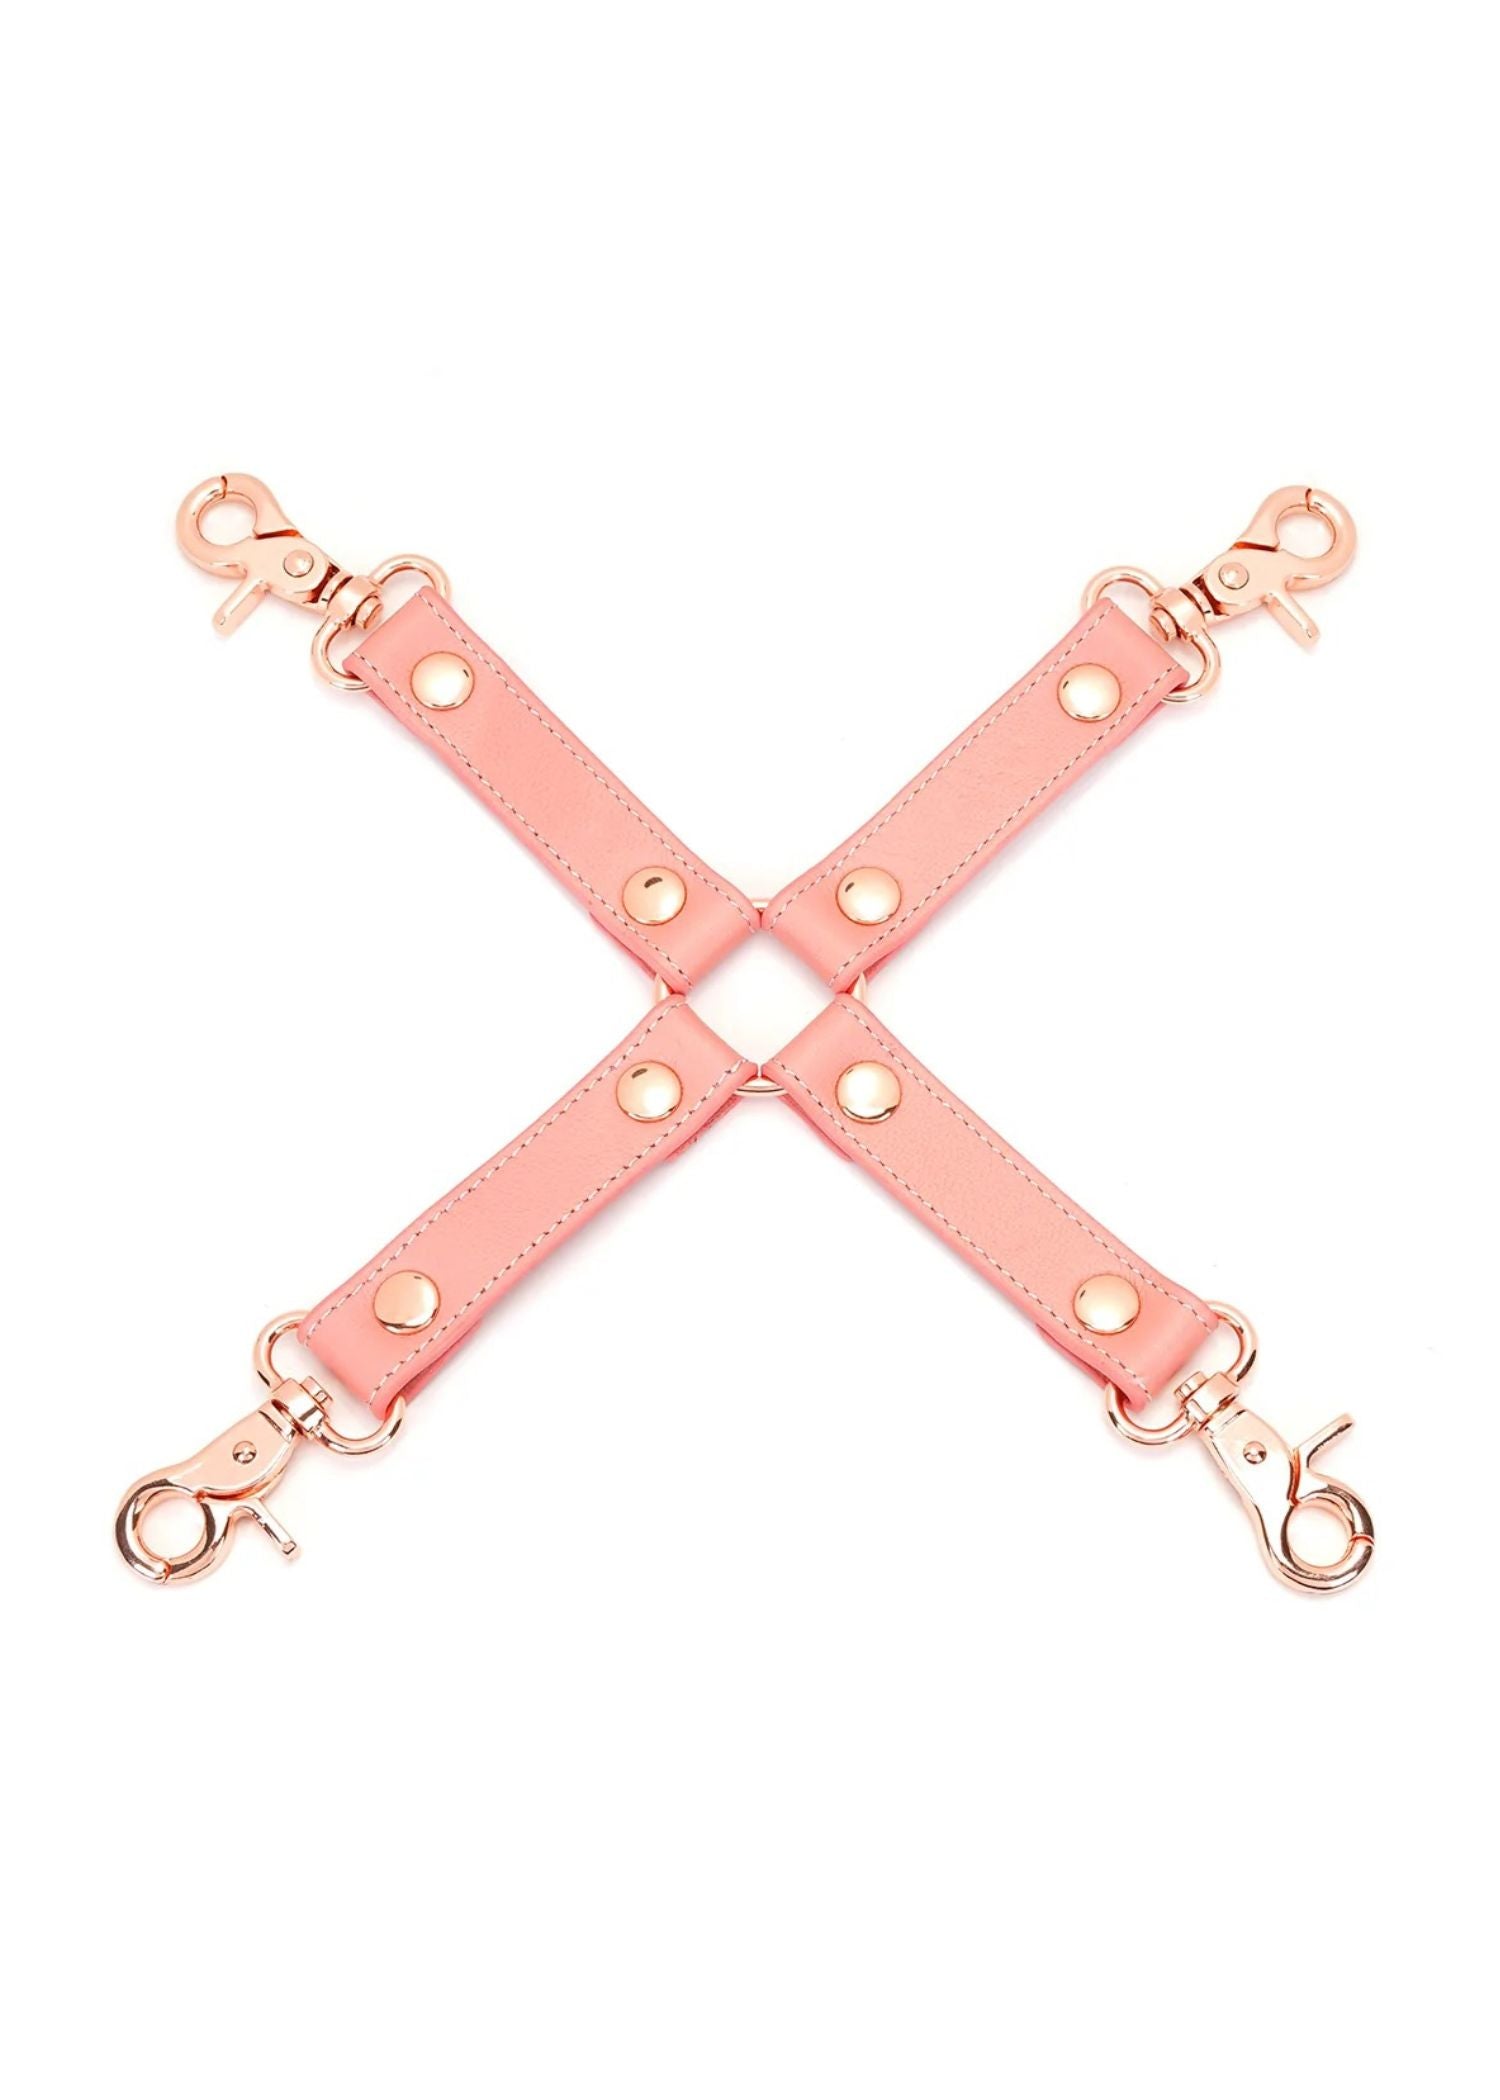 Liebe Seele Pink Dream Hogtie for Handcuff & Anklecuff - BDSM Bondage | Avec Amour Lingerie